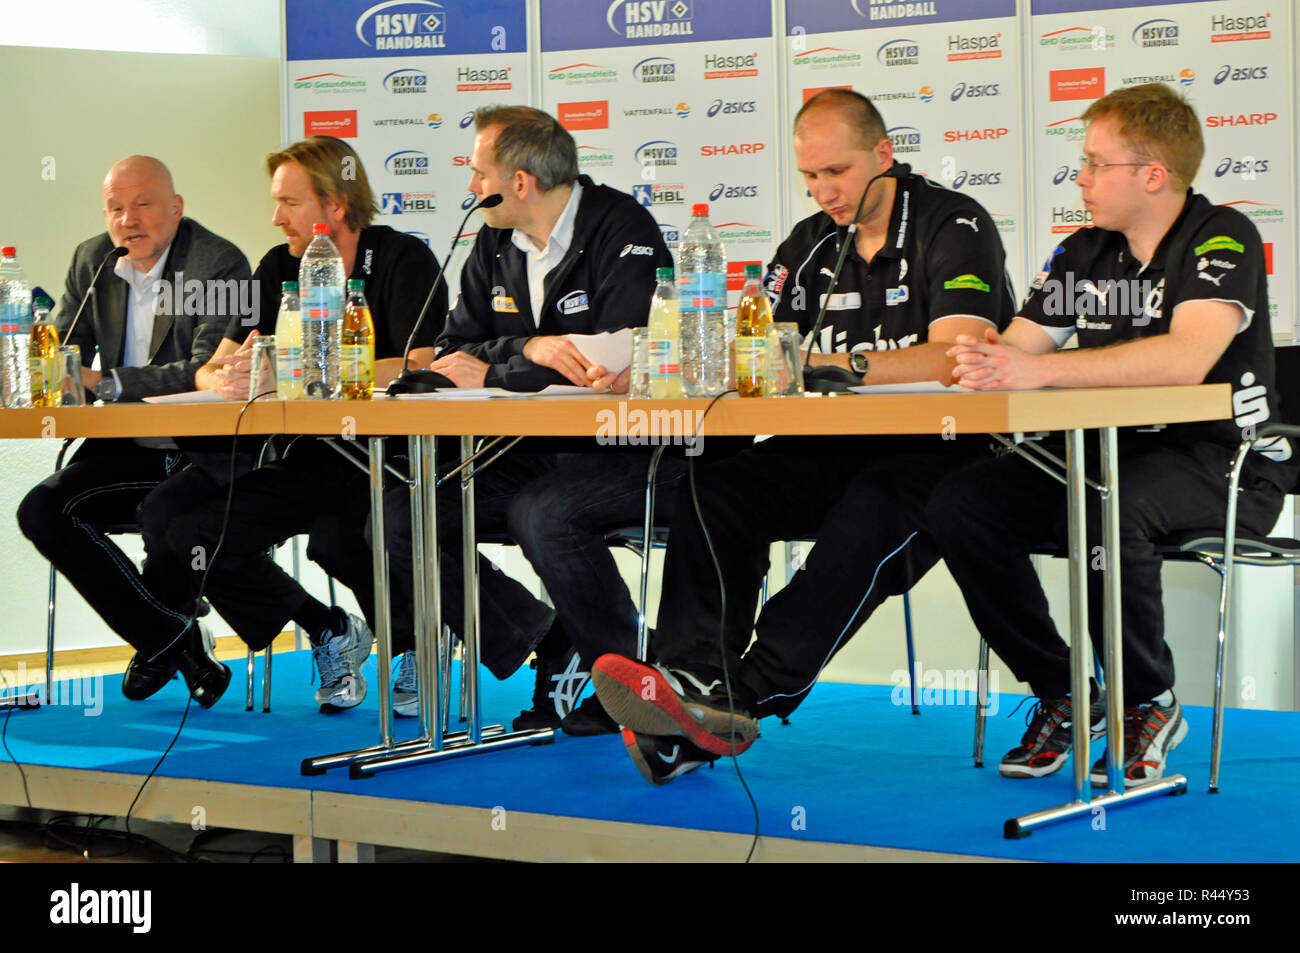 HSV Handball Pressekonferenz, Barclaycard Arena, Hamburg, Deutschland Stock Photo